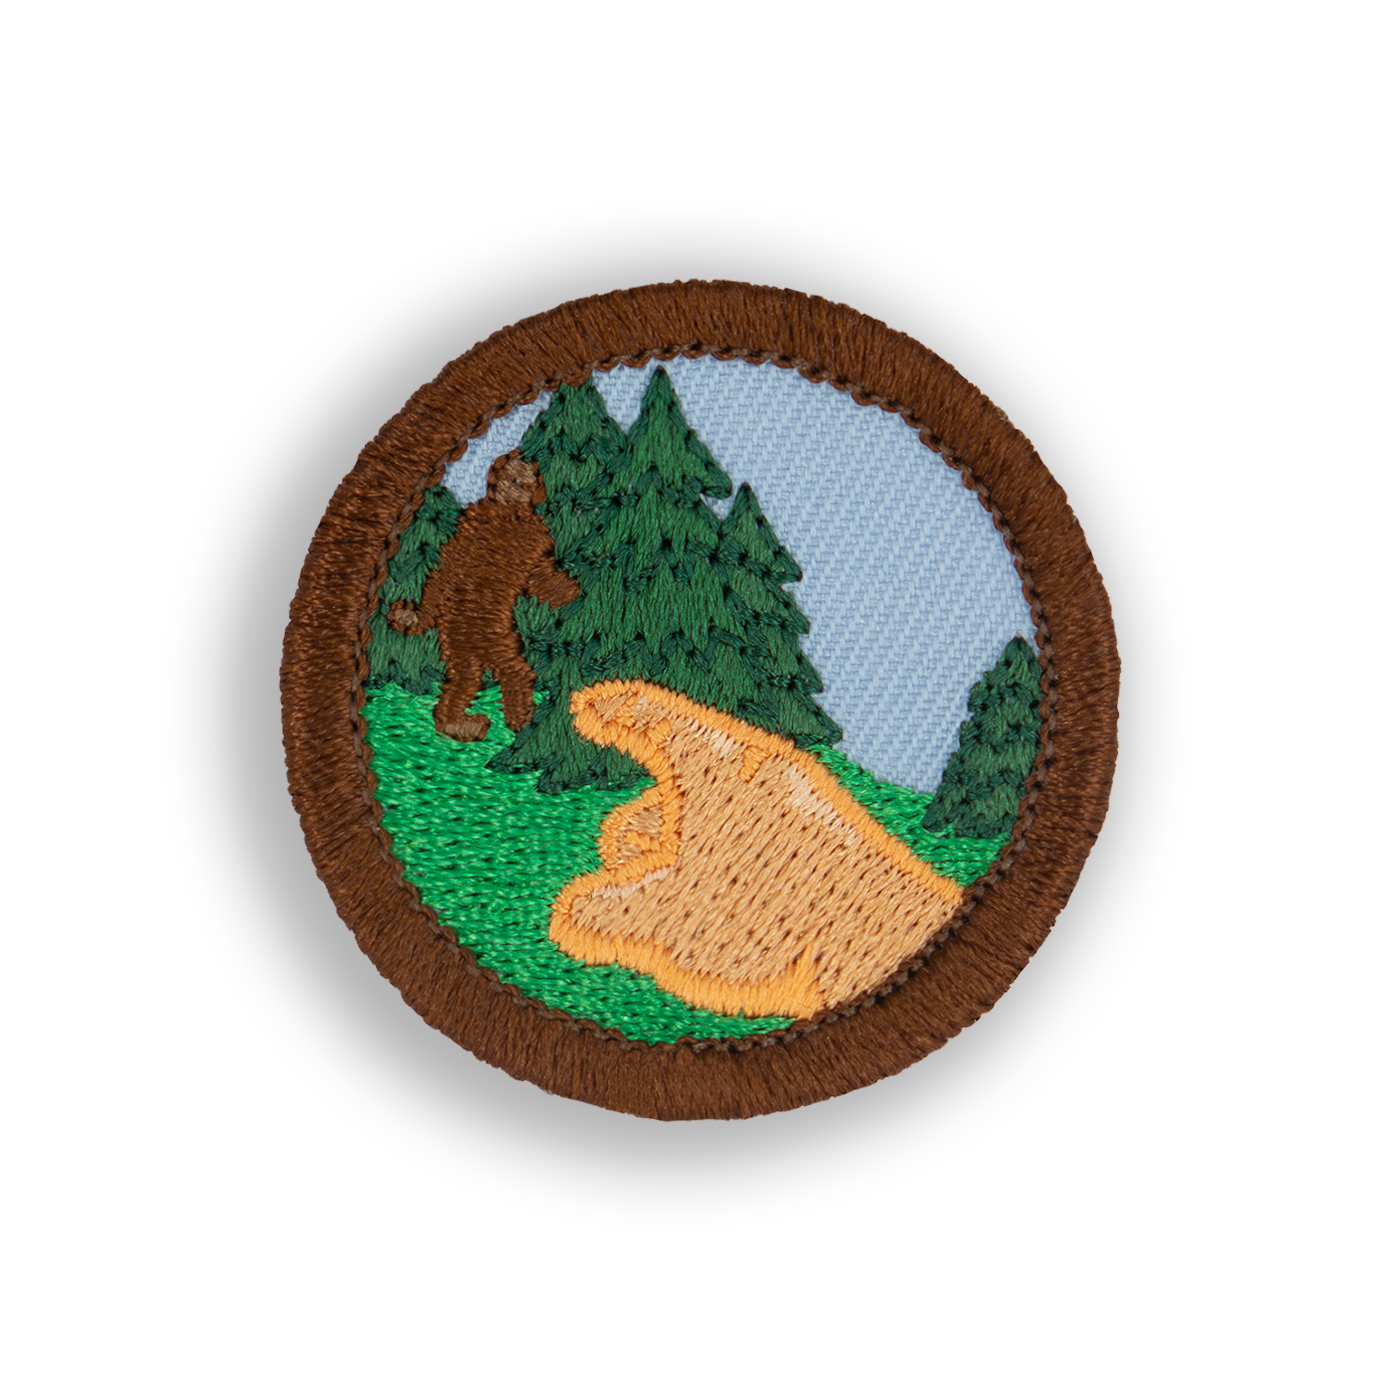 Bigfoot Sighting Patch - Demerit Wear - Fake Merit Badges